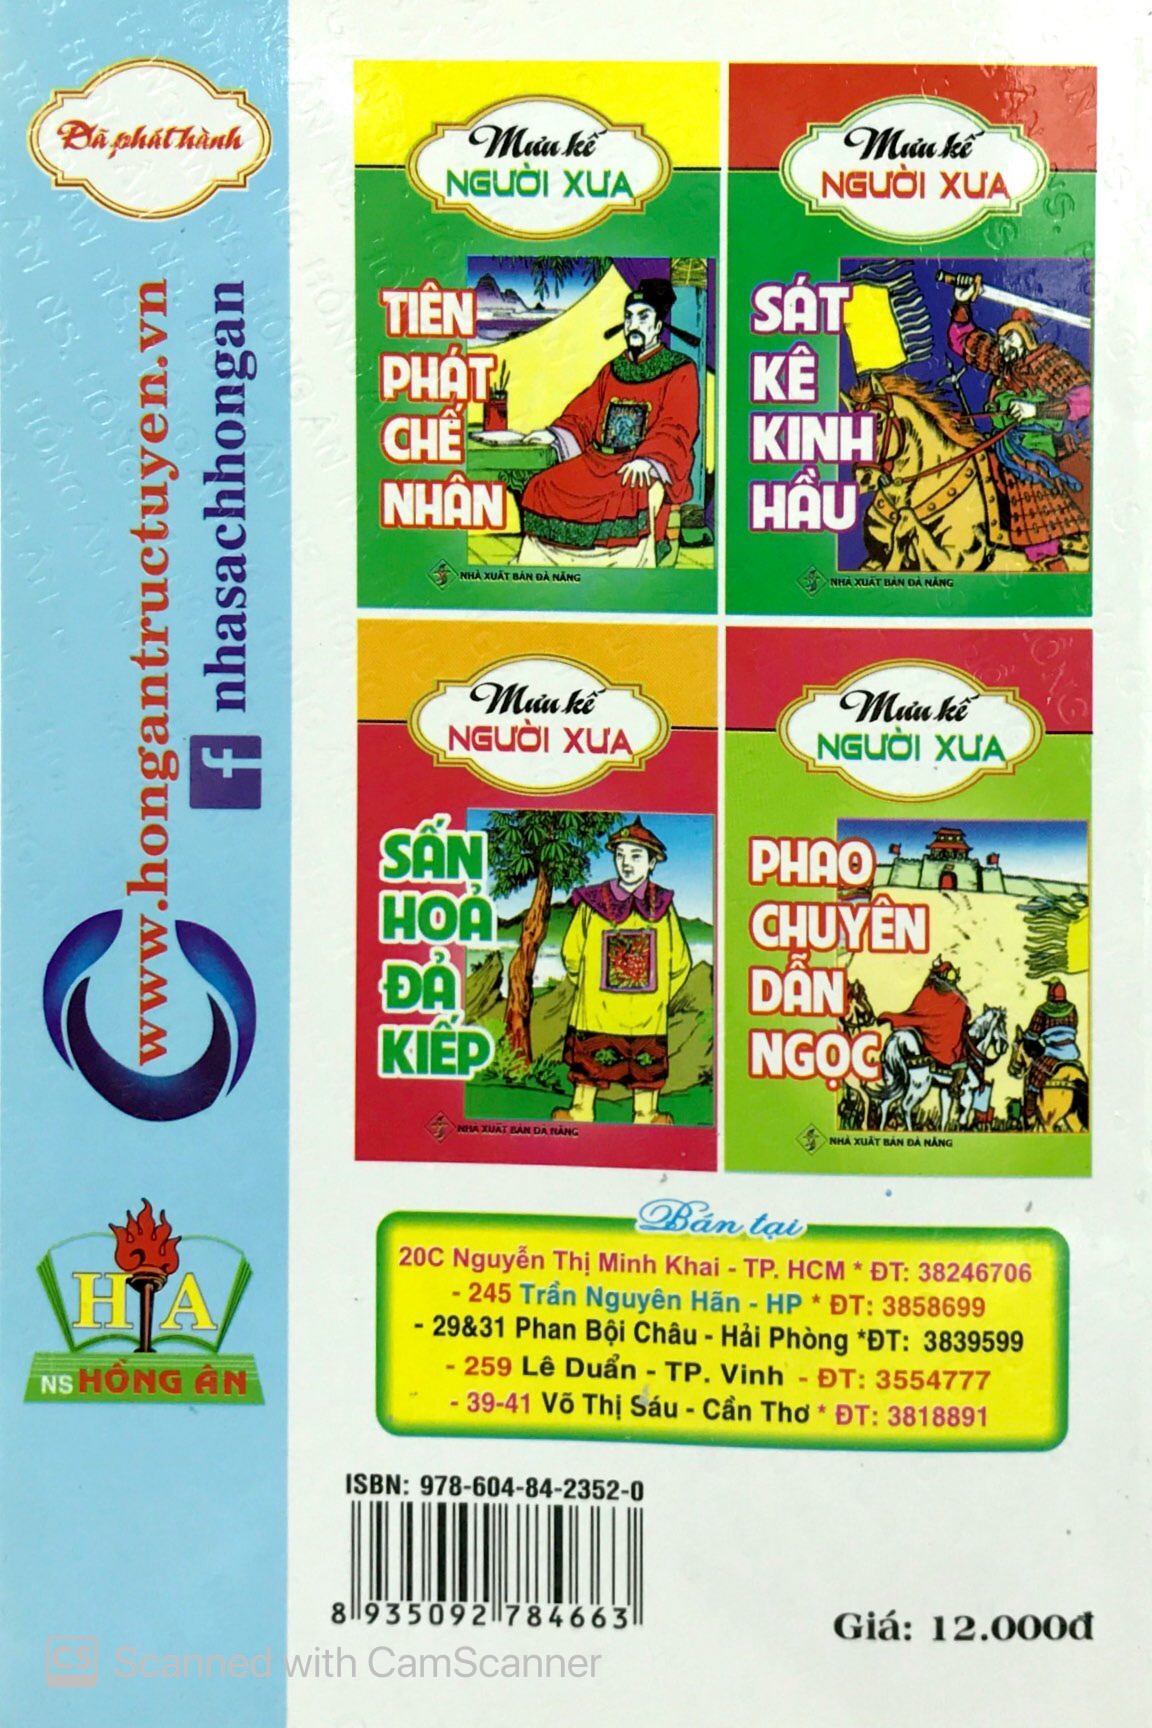 Thuận Thủ Khiên Dương - Mưu Kế Người Xưa PDF